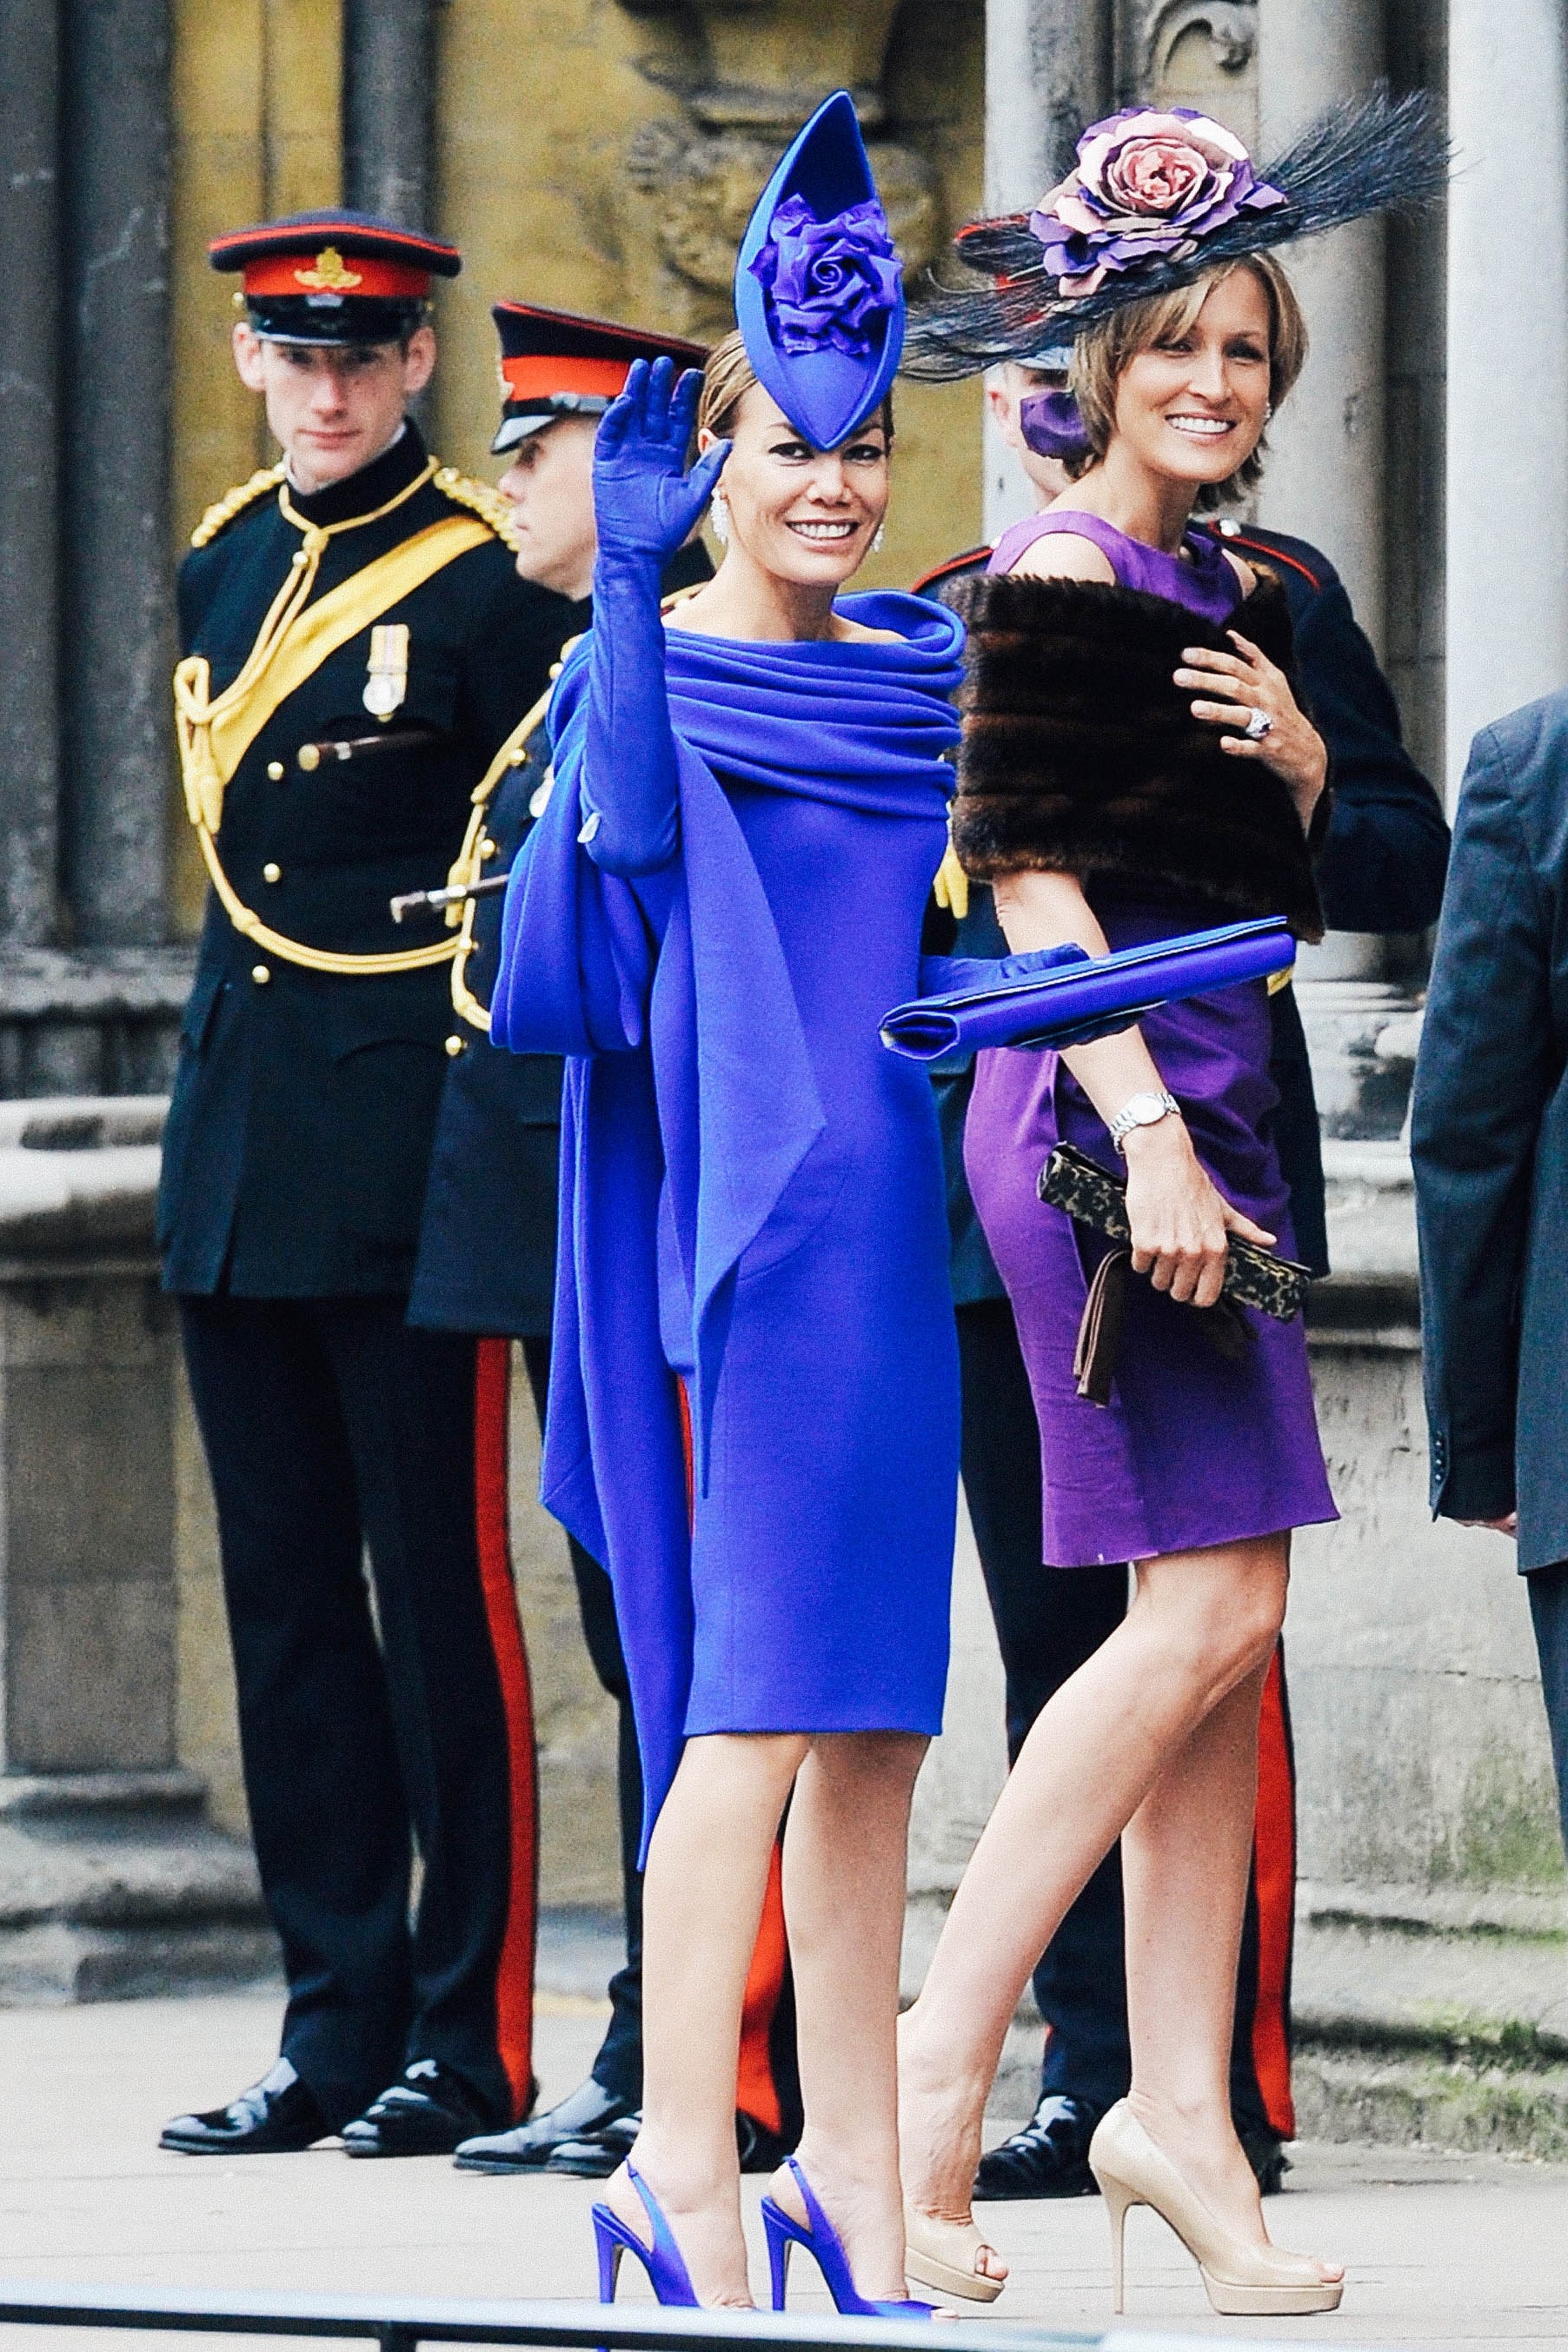 Tara Palmer-Tomkinson's blue dress, heels, bag, and gloves match her blue fascinator.